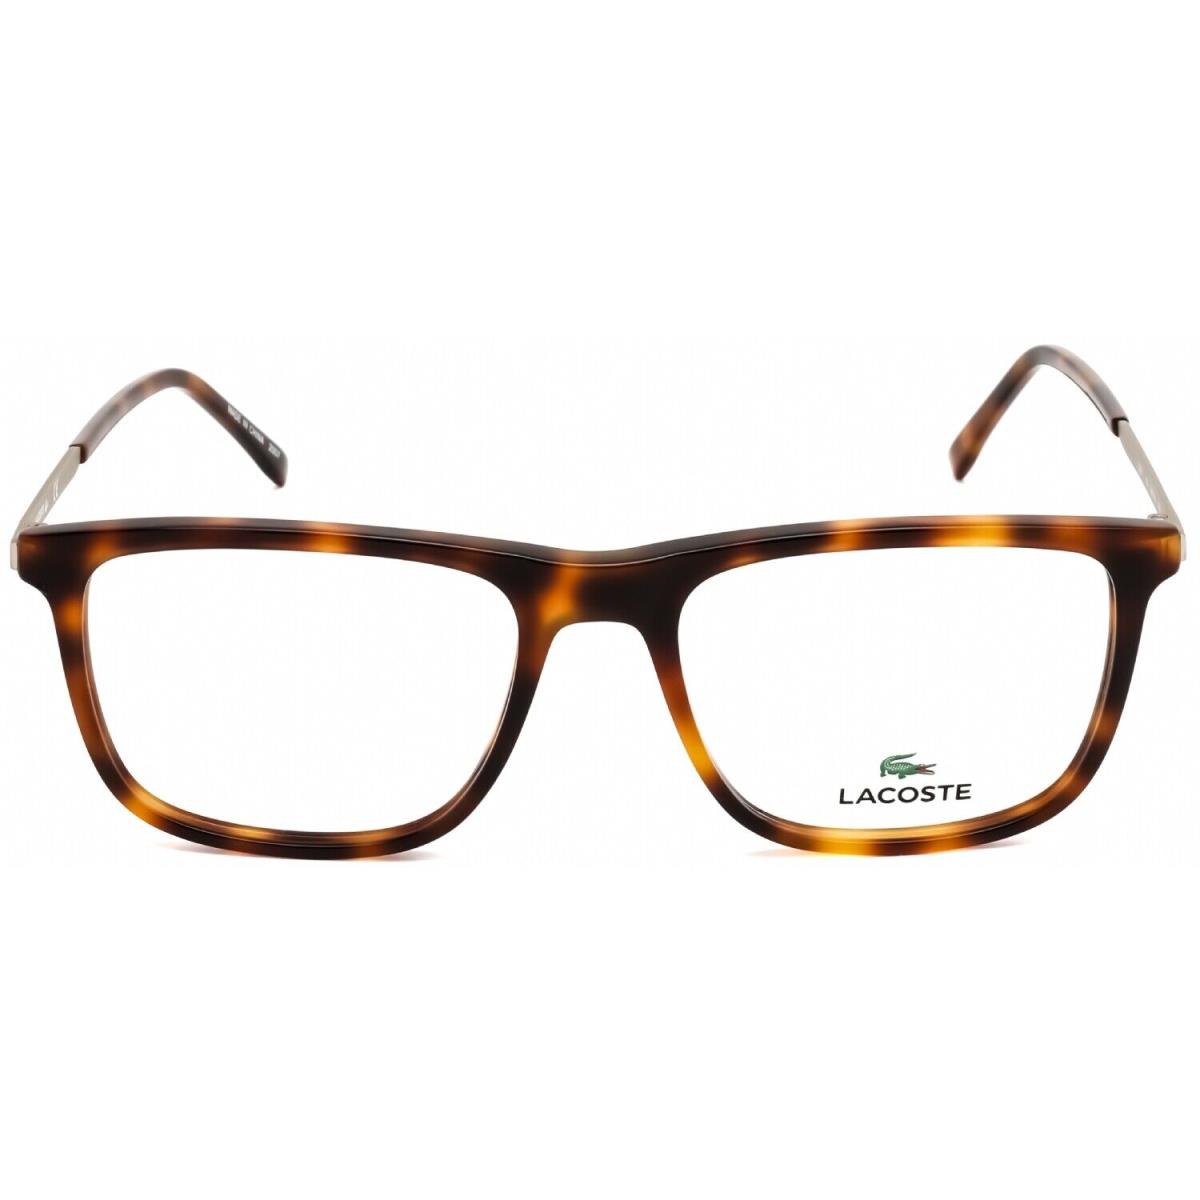 Lacoste Eyeglasses L2871-214-54 Size 54mm/145mm/18mm - Brown, Frame: Brown